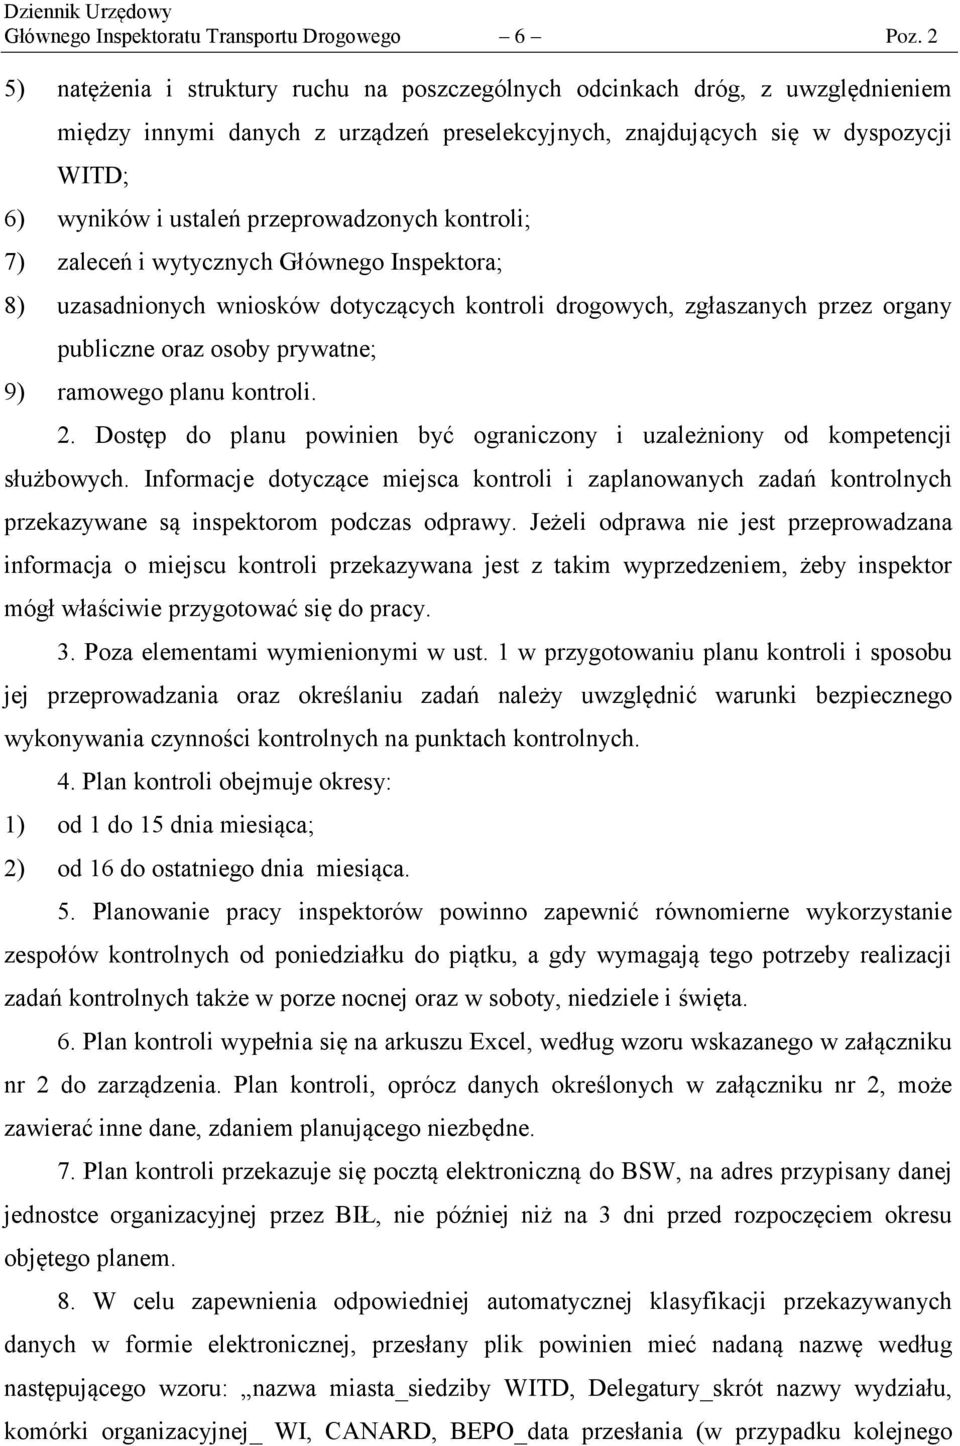 przeprowadzonych kontroli; 7) zaleceń i wytycznych Głównego Inspektora; 8) uzasadnionych wniosków dotyczących kontroli drogowych, zgłaszanych przez organy publiczne oraz osoby prywatne; 9) ramowego